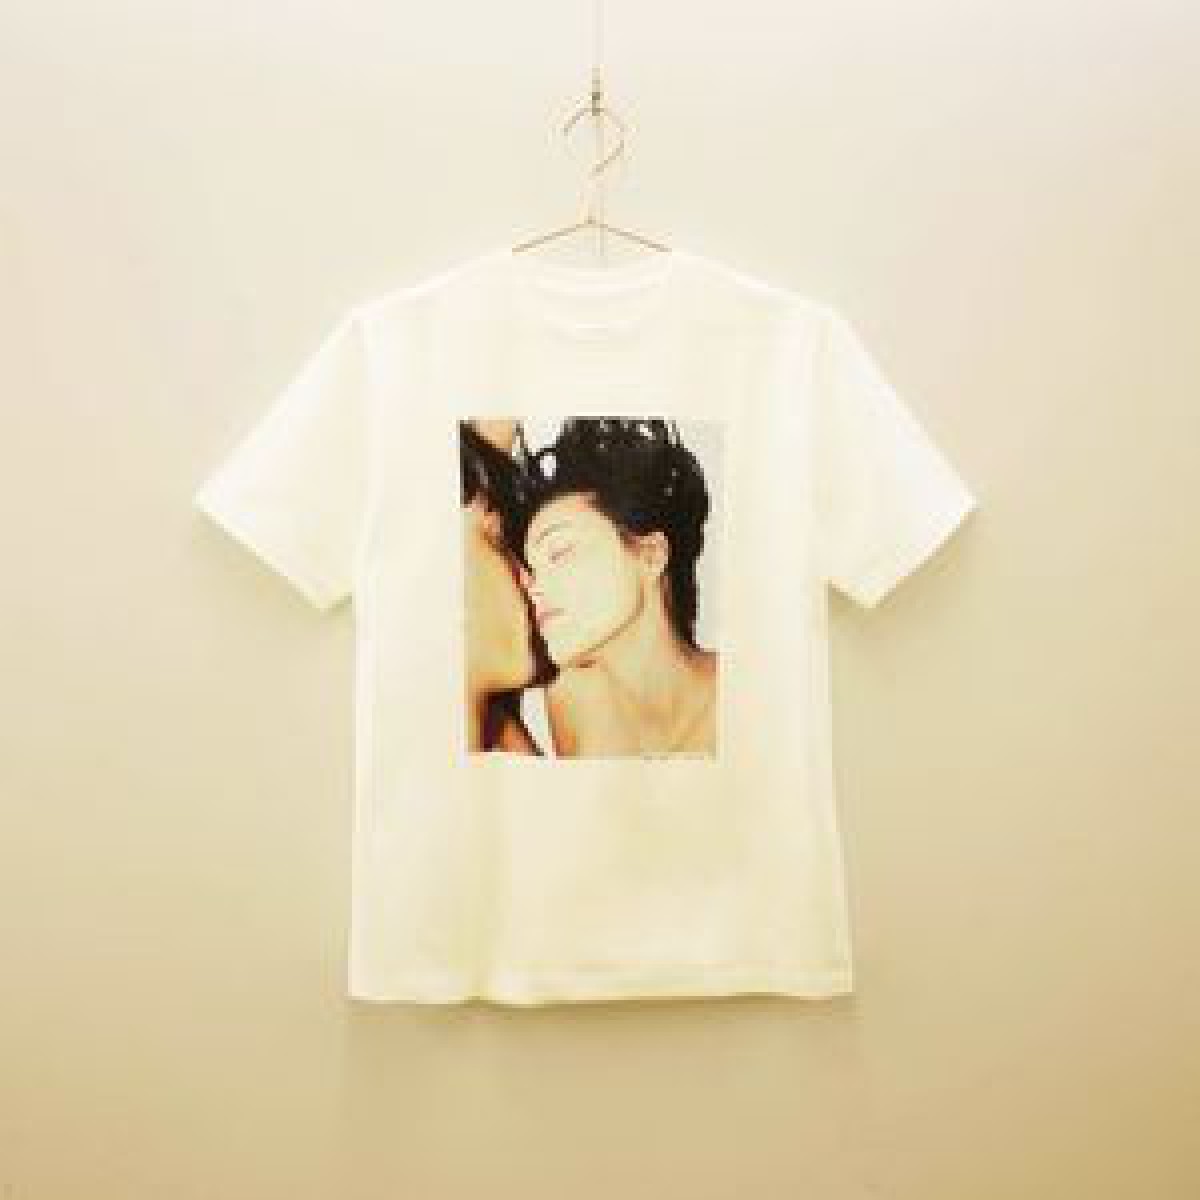 「ウズ」"38℃の血色感を叶える"リップトリートメントのキーヴィジュアルがTシャツに、数量限定で発売